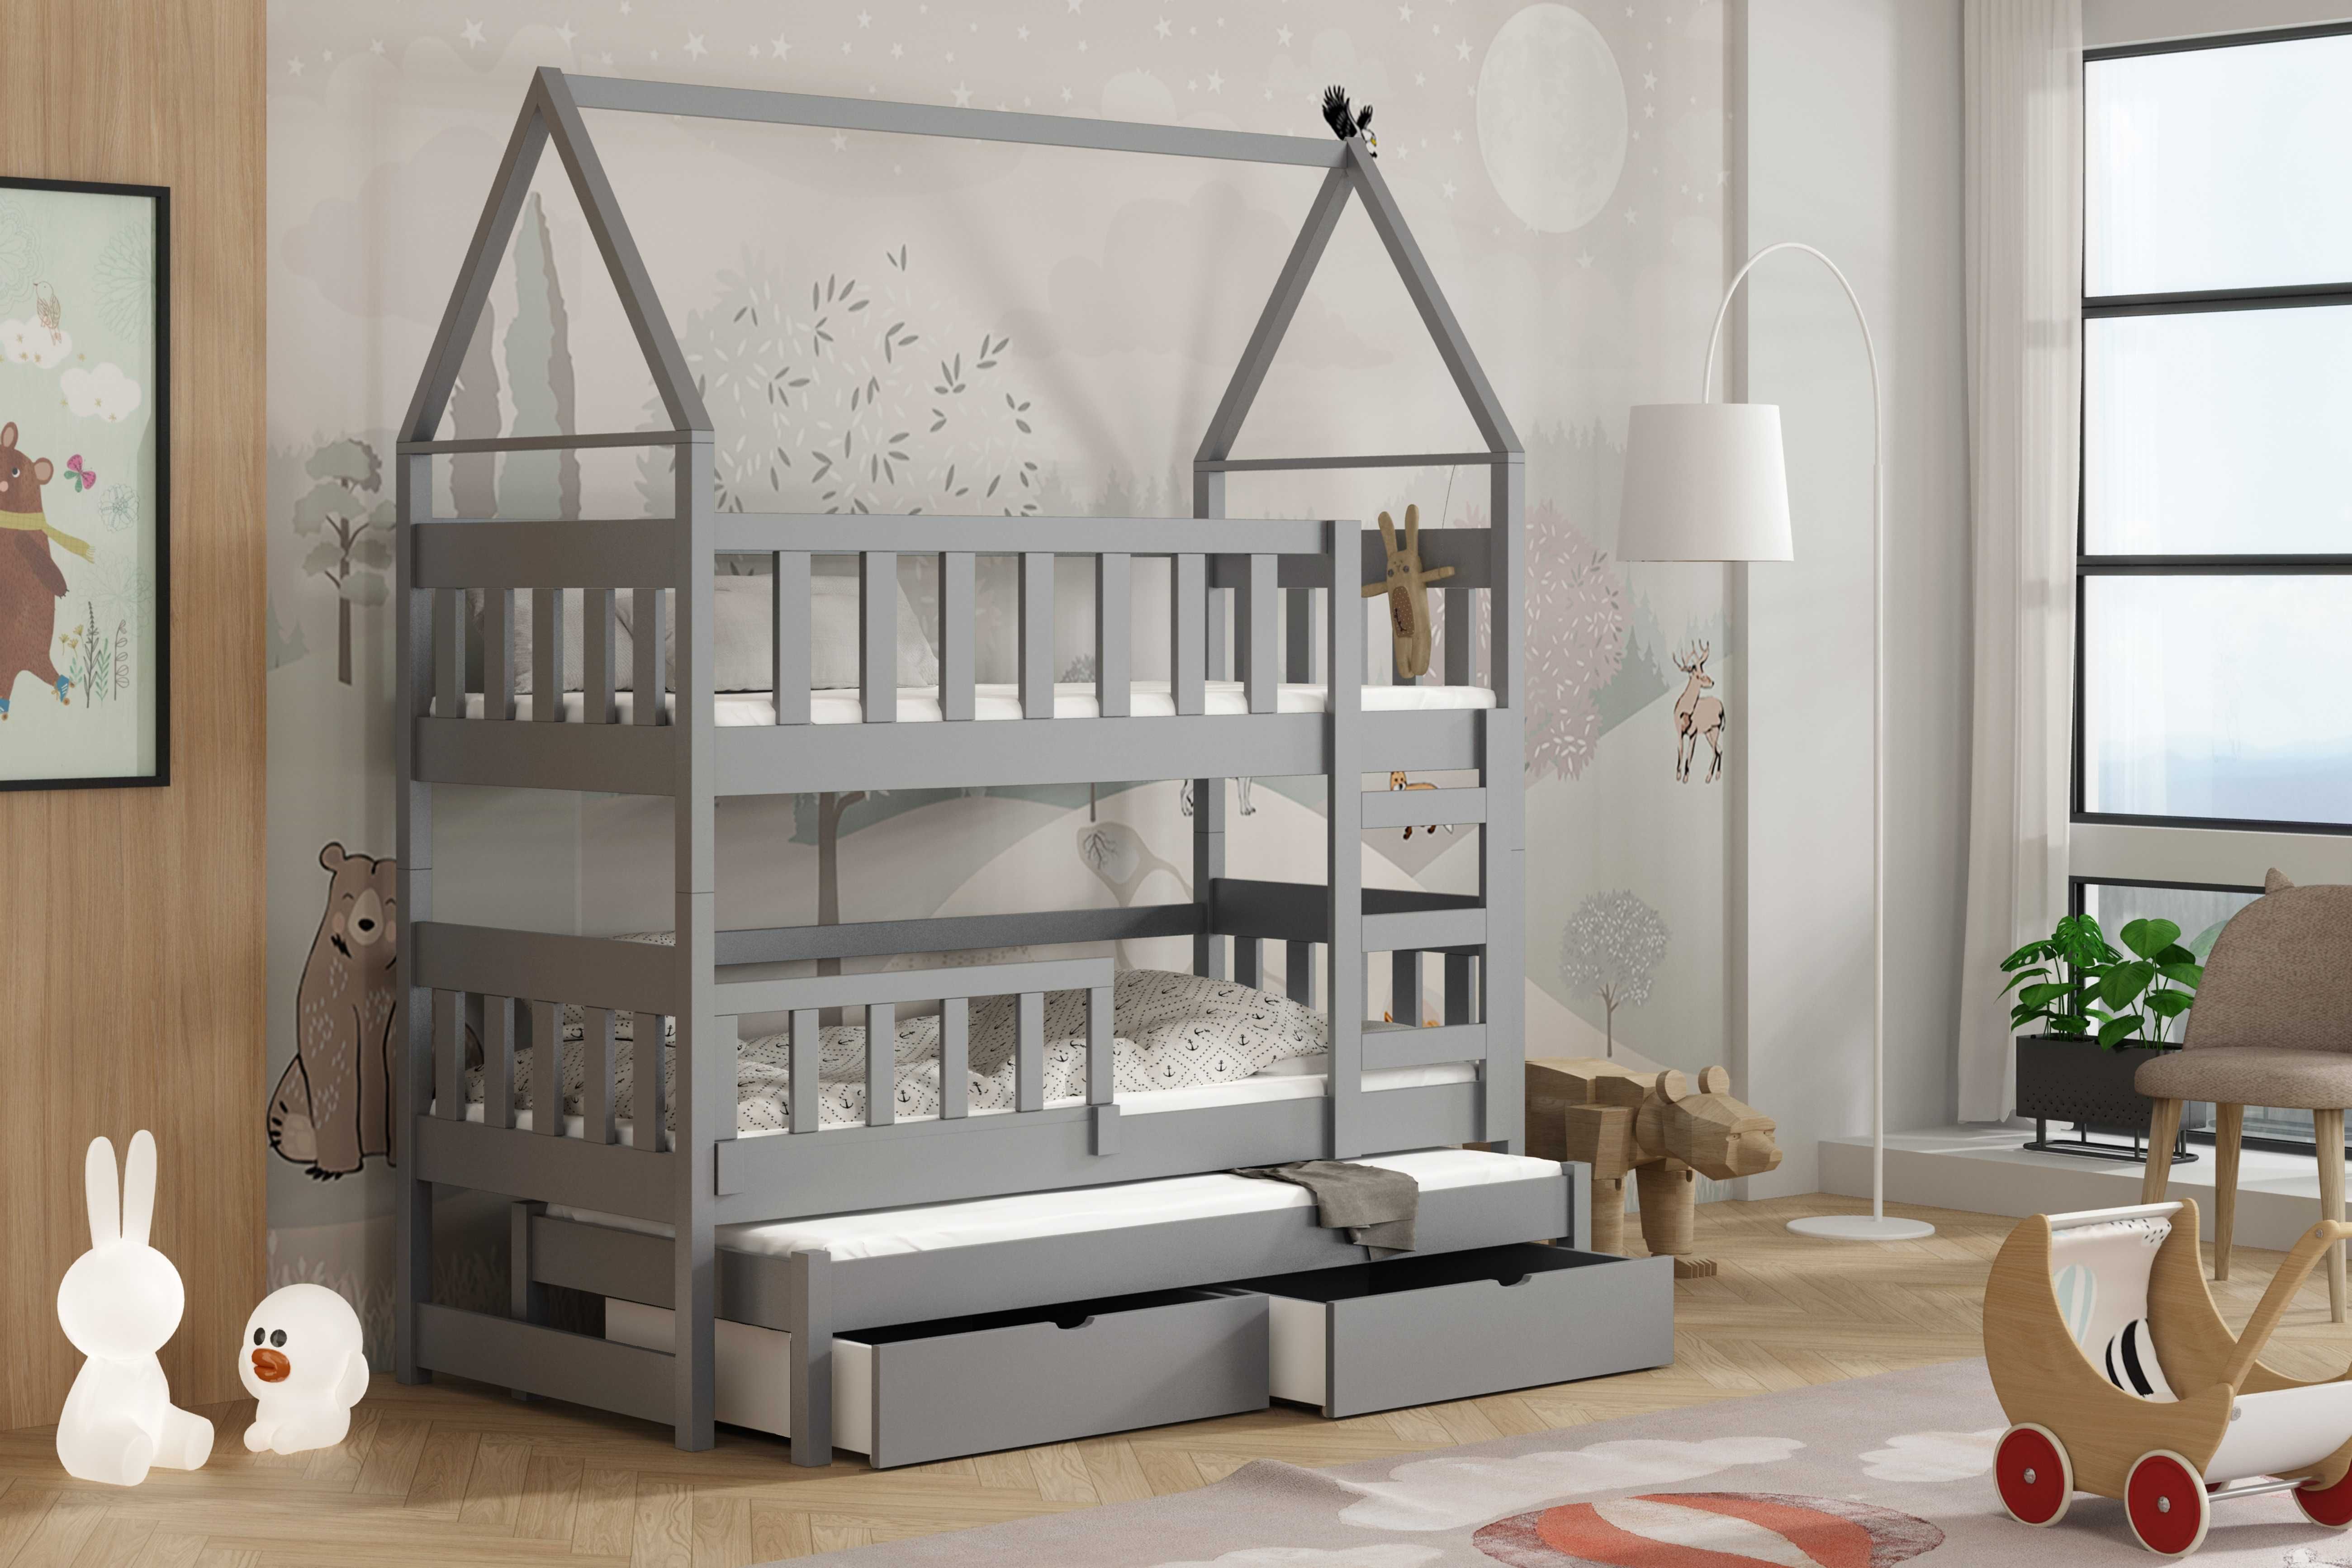 Łóżko dla 3 dzieci DOMEK OLA 188x81 - materace gratis !